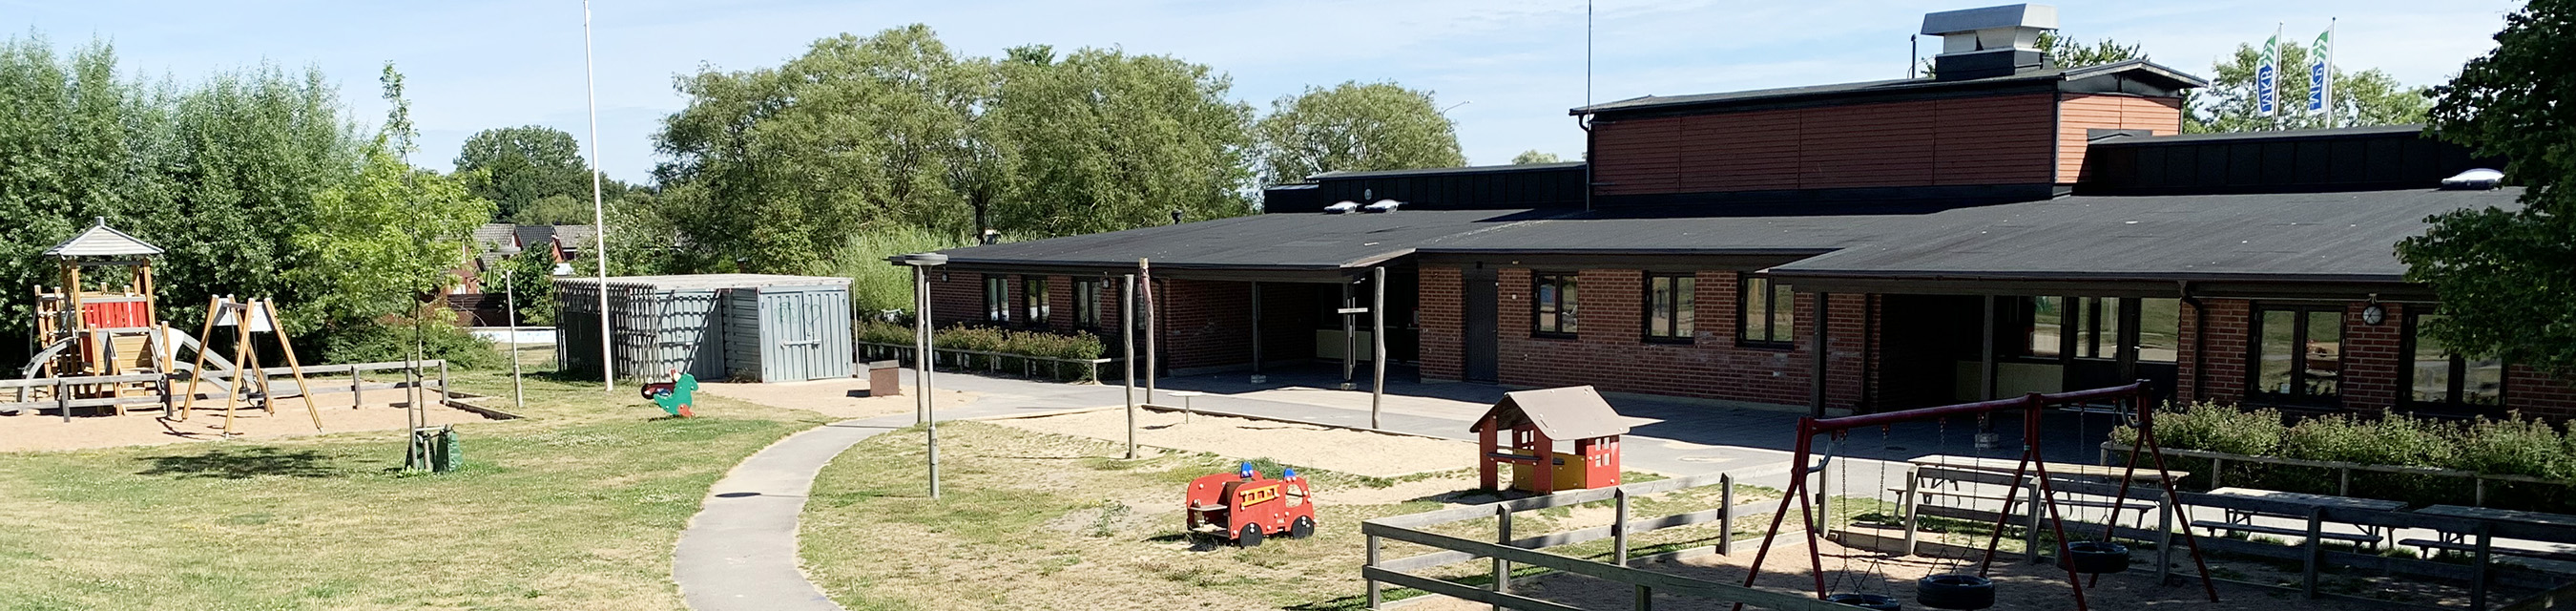 Oxiegårdens förskola är byggd i ett plan och har yra avdelningar.